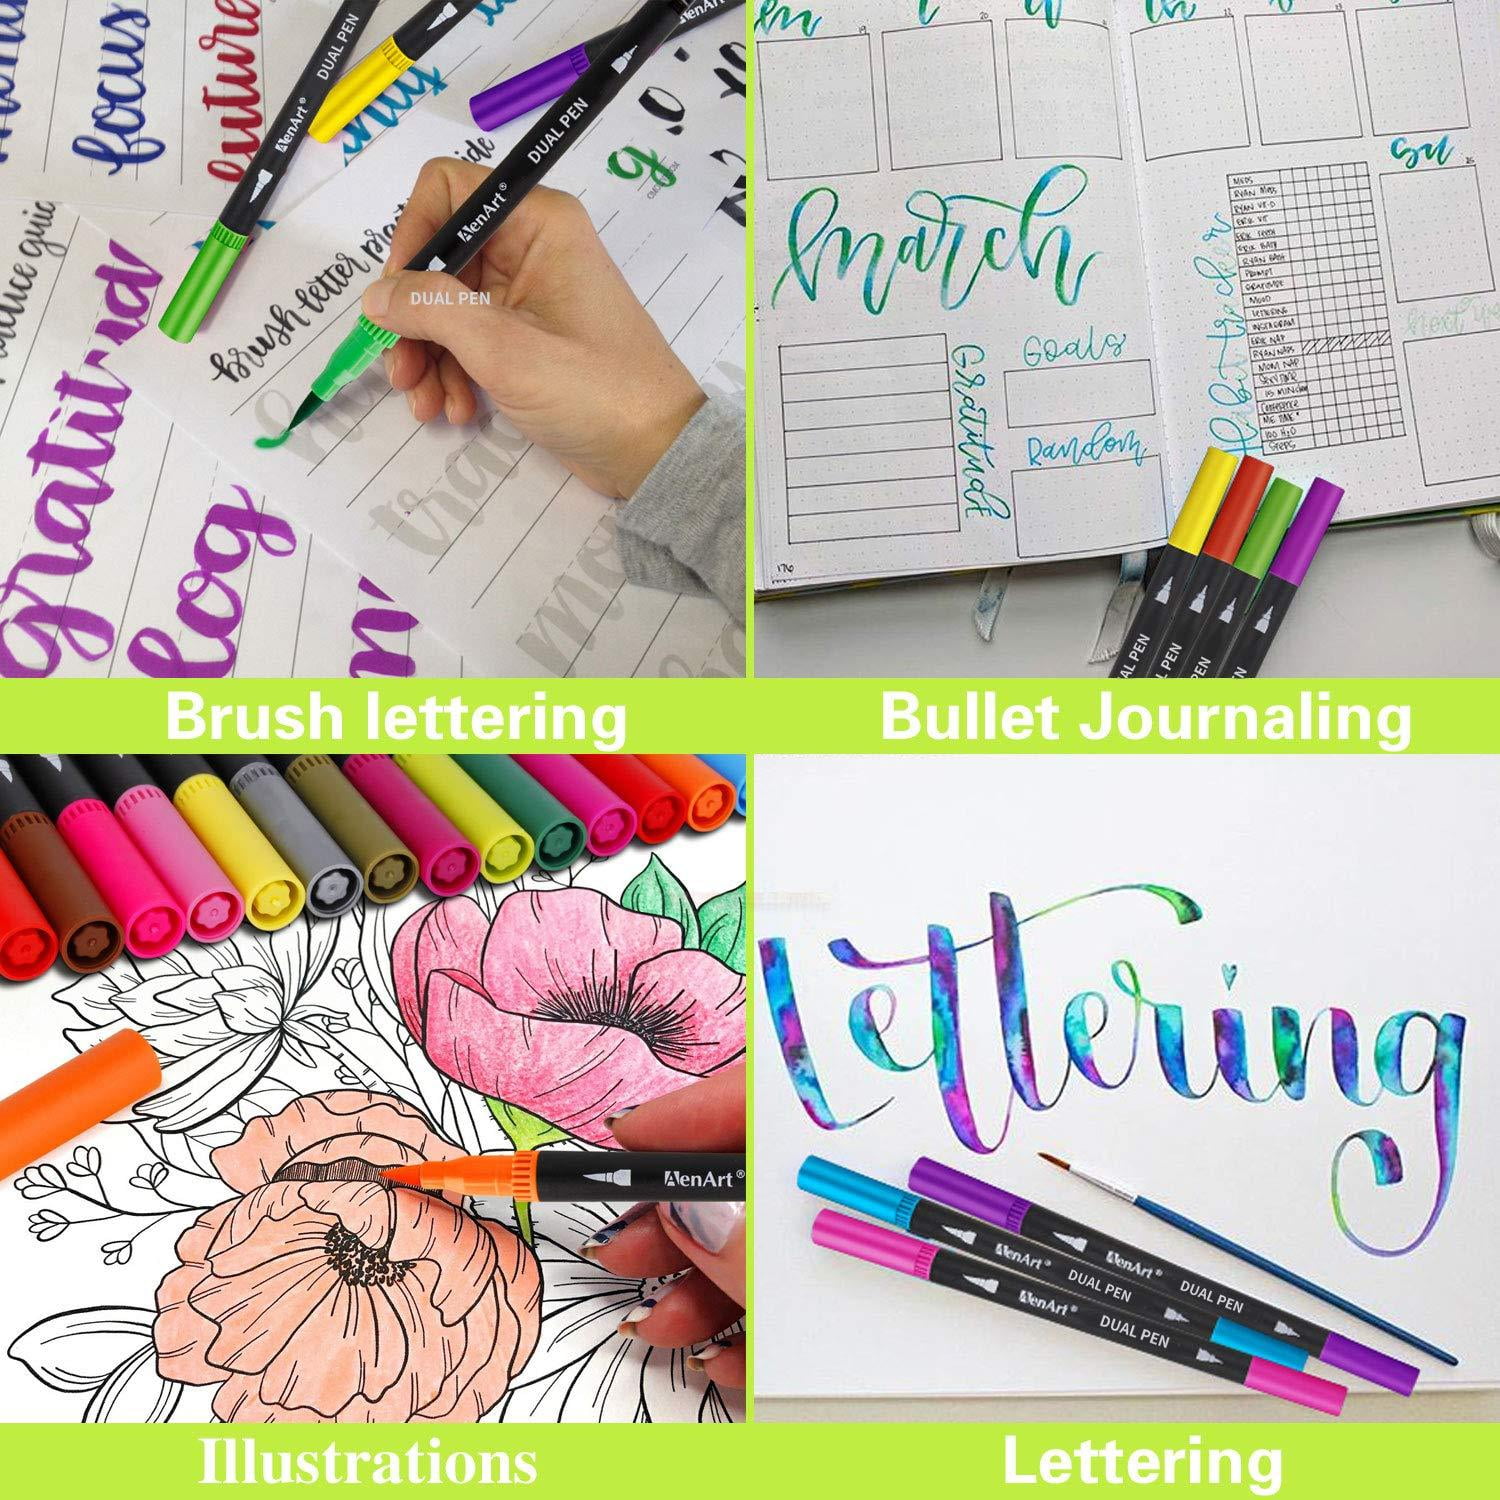 vaola art FL11182 Fine Tip Markers - Journal Pens - Colored Pens